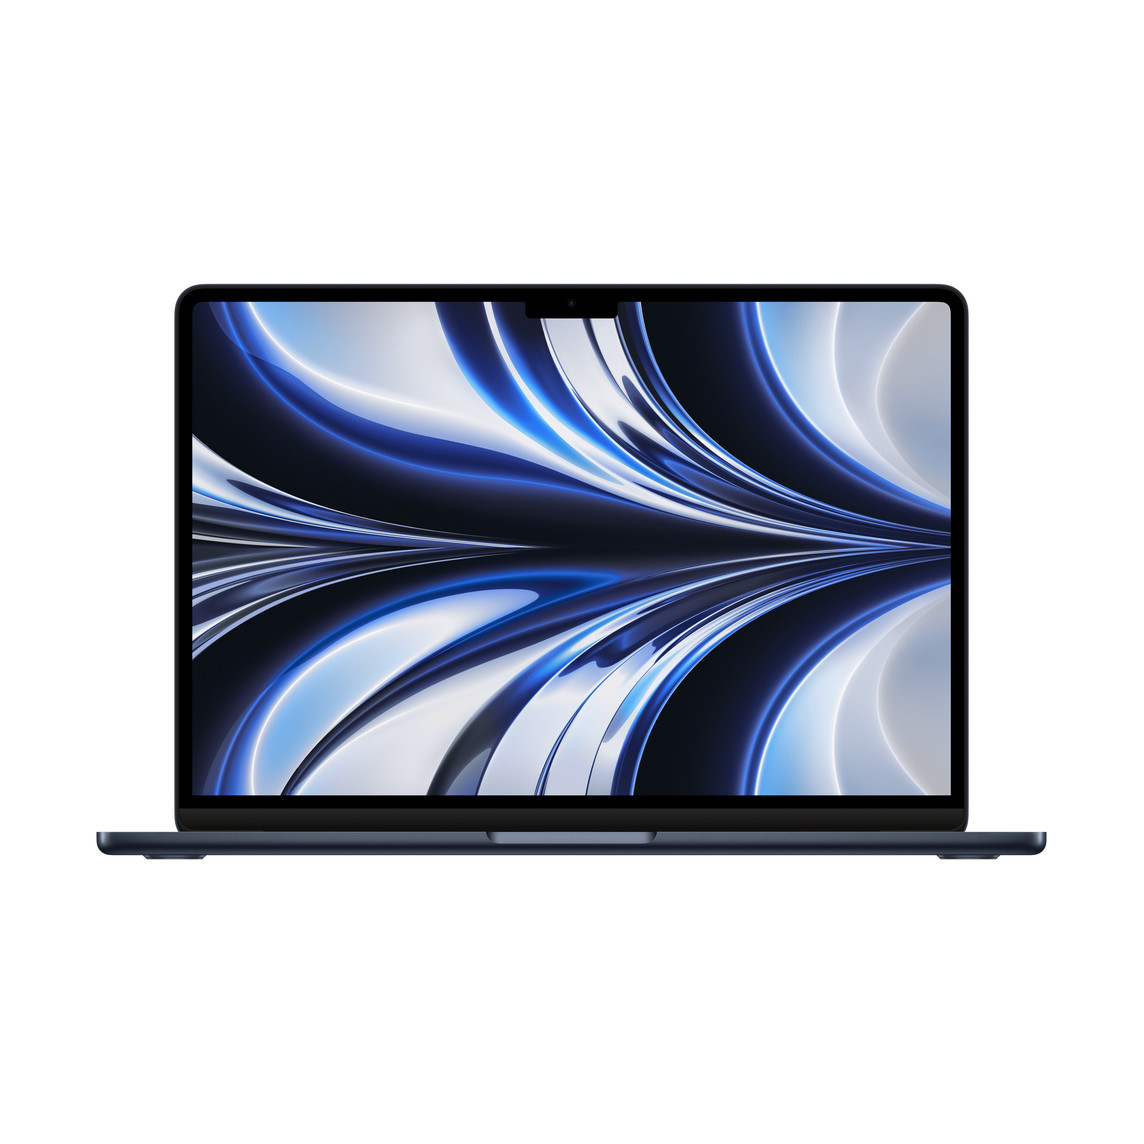 呈打开状态的午夜色 MacBook Air，展示细窄边框、FaceTime 高清摄像头、凸出的垫脚、曲边设计。